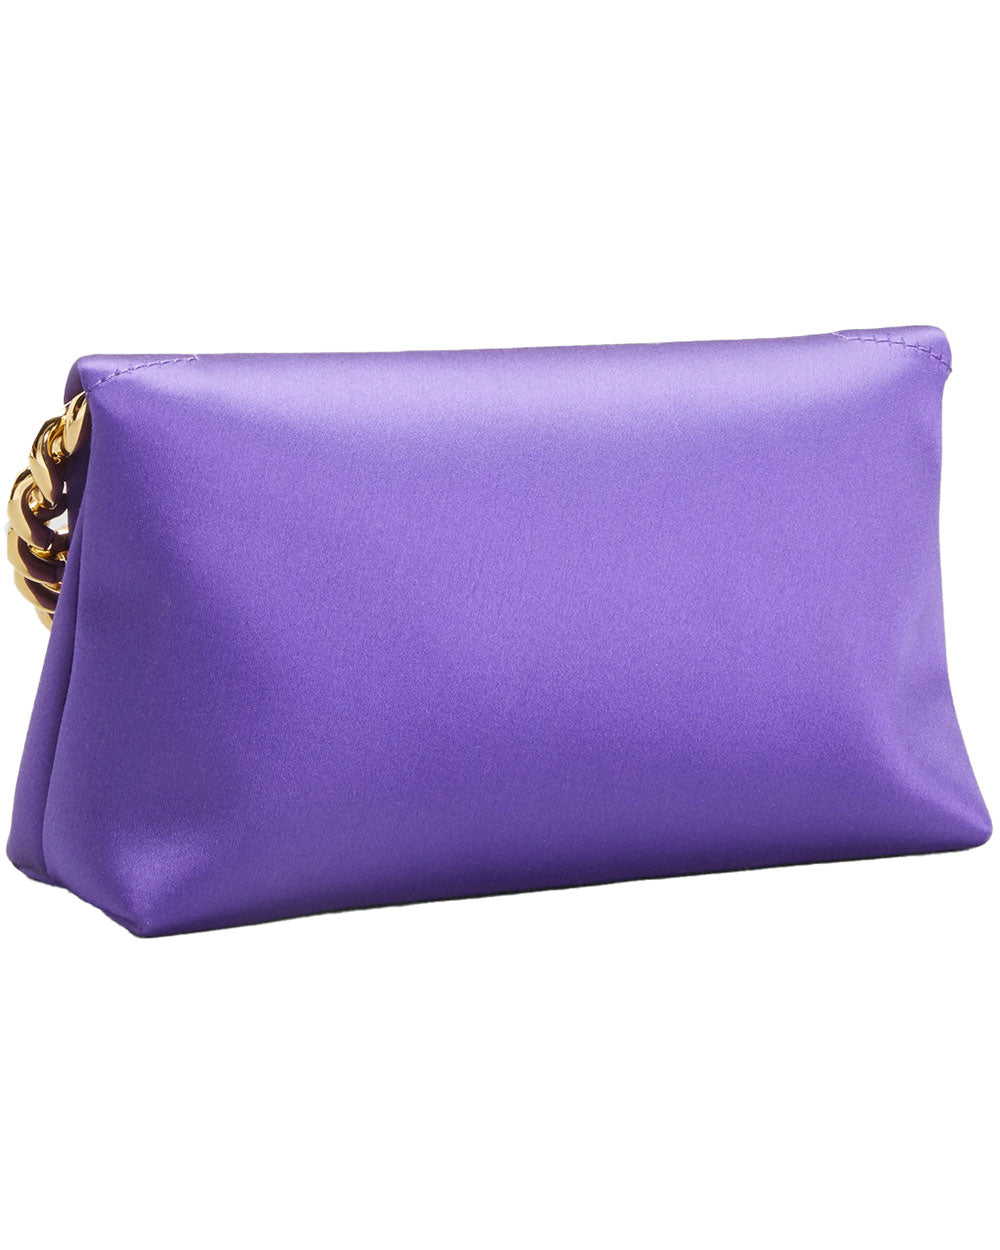 Satin Mini Chain Shoulder Bag in African Violet